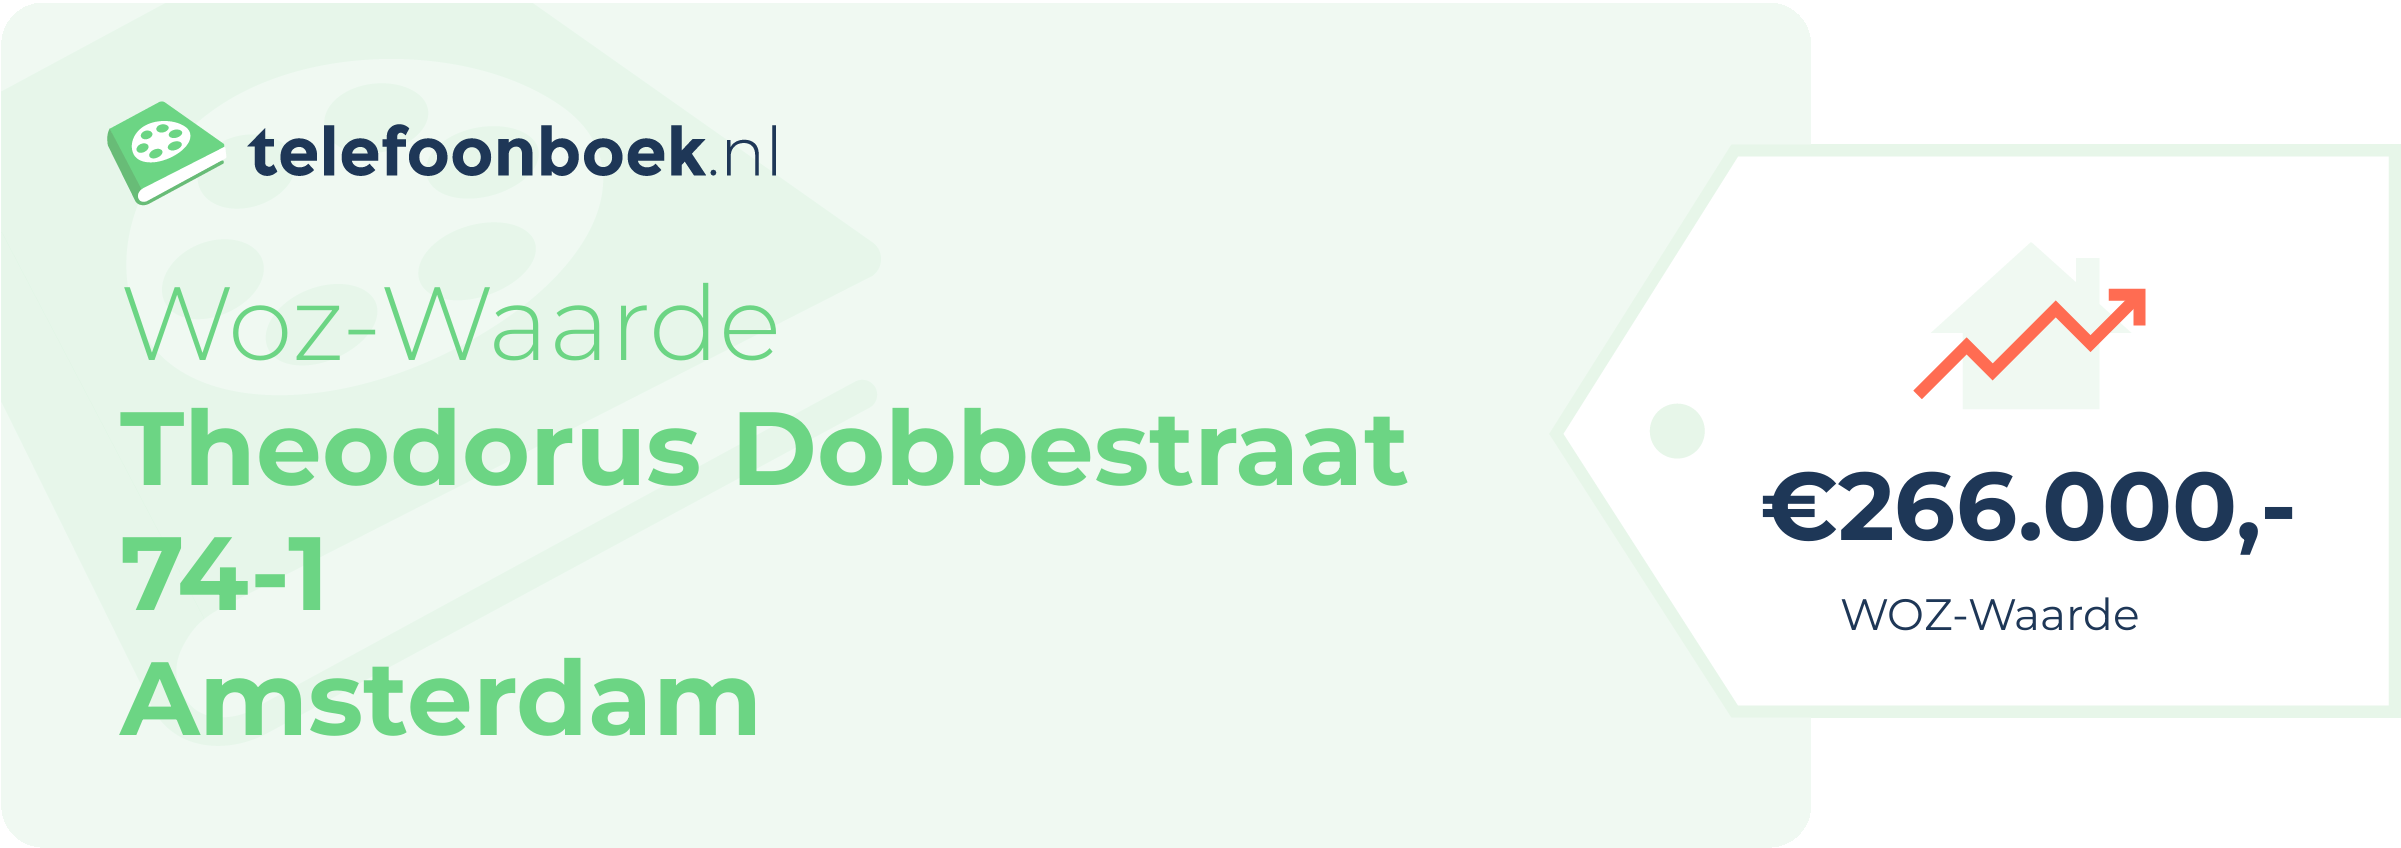 WOZ-waarde Theodorus Dobbestraat 74-1 Amsterdam